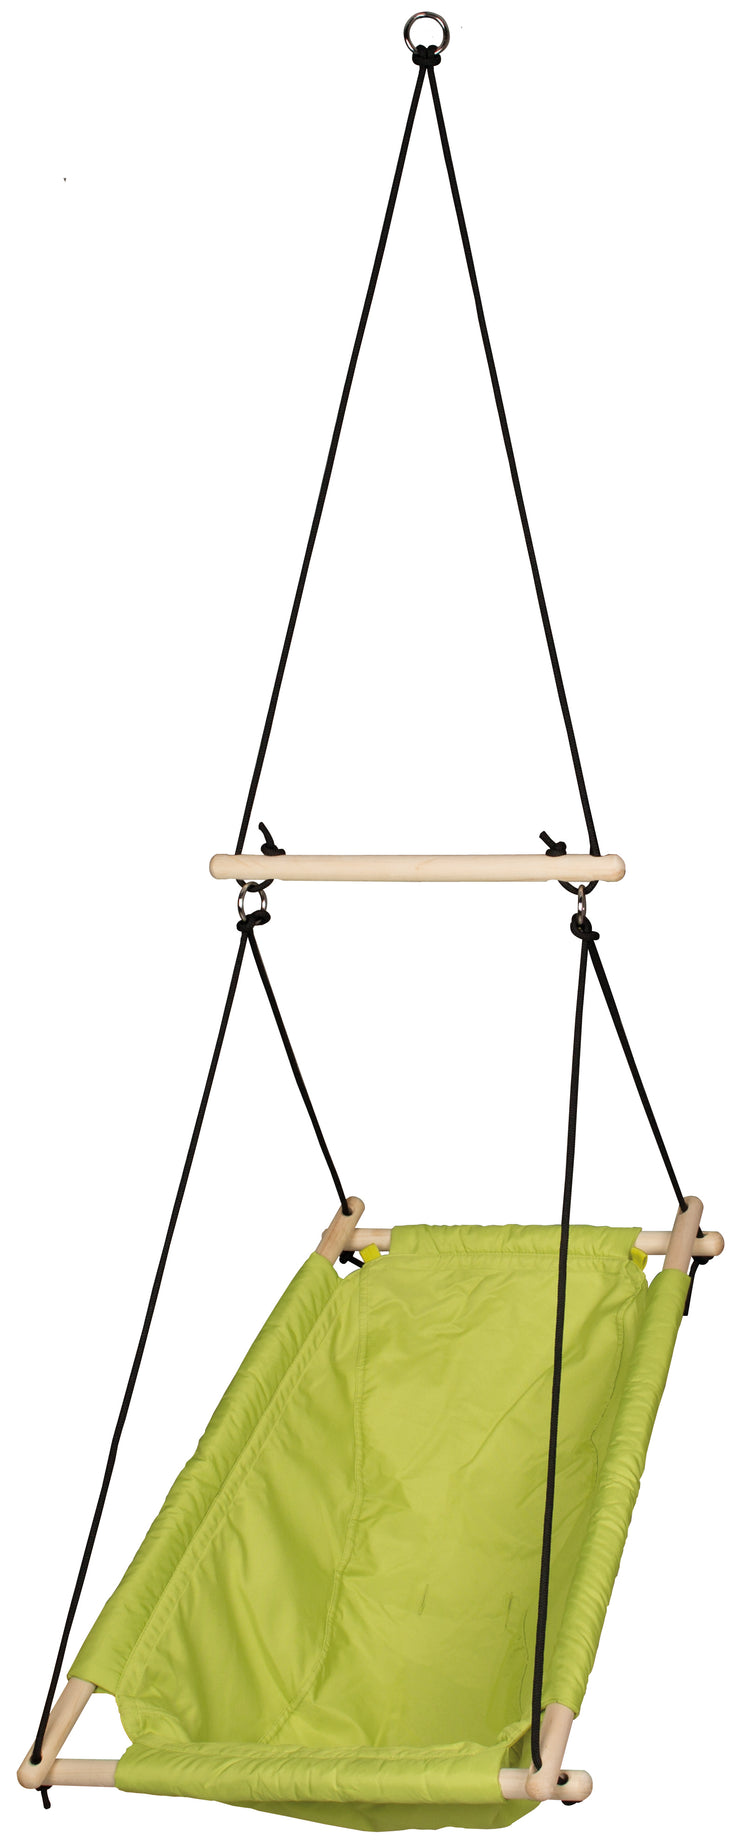 Asiento colgante 'verde', ajustable desde el sofá oscilante hasta el asiento oscilante, desde el nacimiento hasta aprox. 6 años/30kg